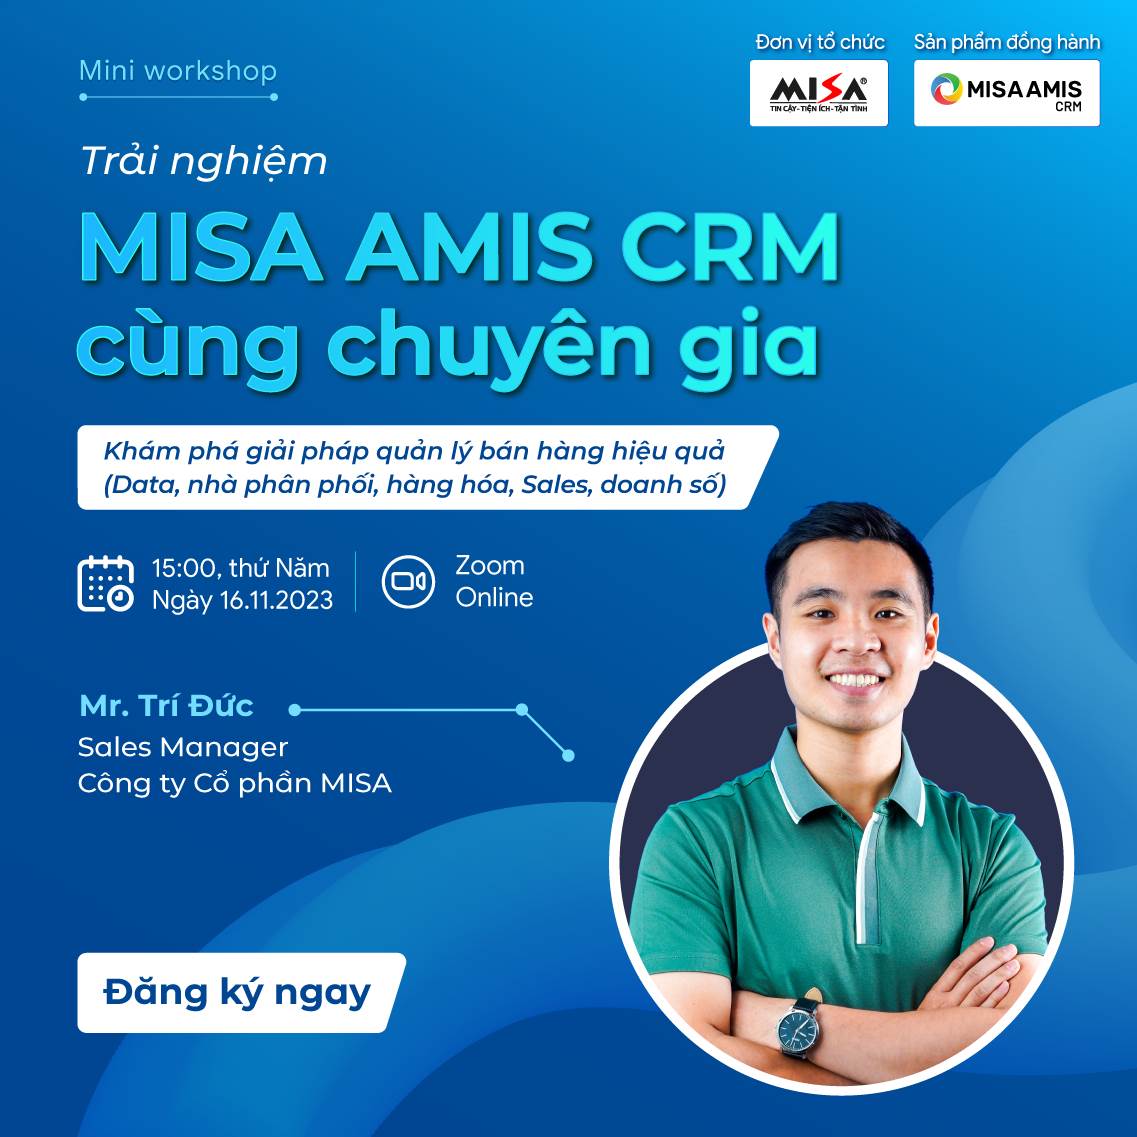 Trải nghiệm MISA AMIS CRM cùng chuyên gia